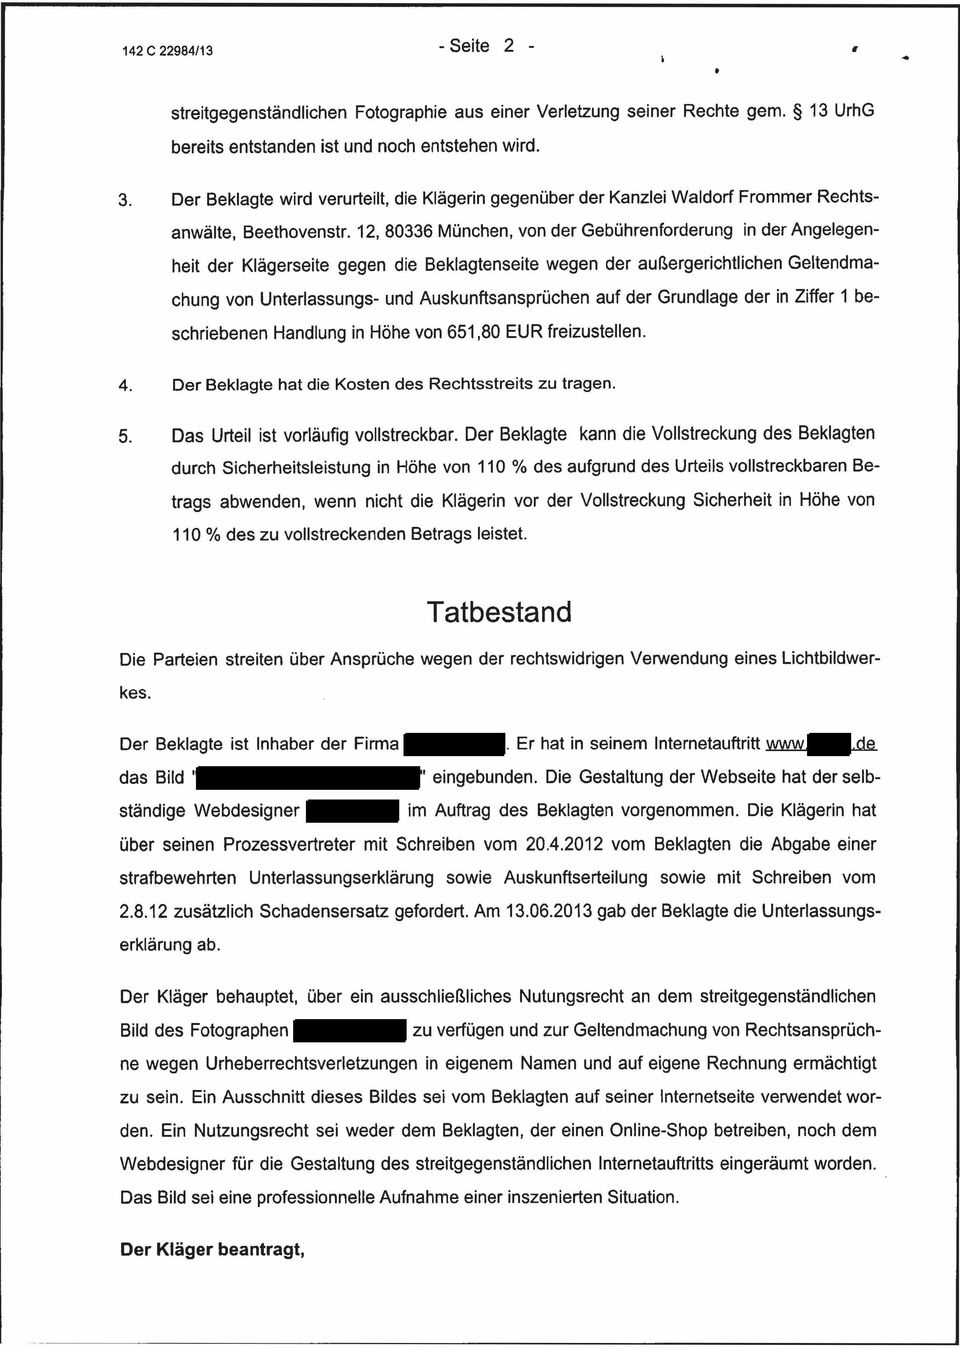 12, 80336 München, von der Gebührenforderung in der Angelegenheit der Klägerseite gegen die Beklagtenseite wegen der außergerichtlichen Geltendmachung von Unterlassungs- und Auskunftsansprüchen auf